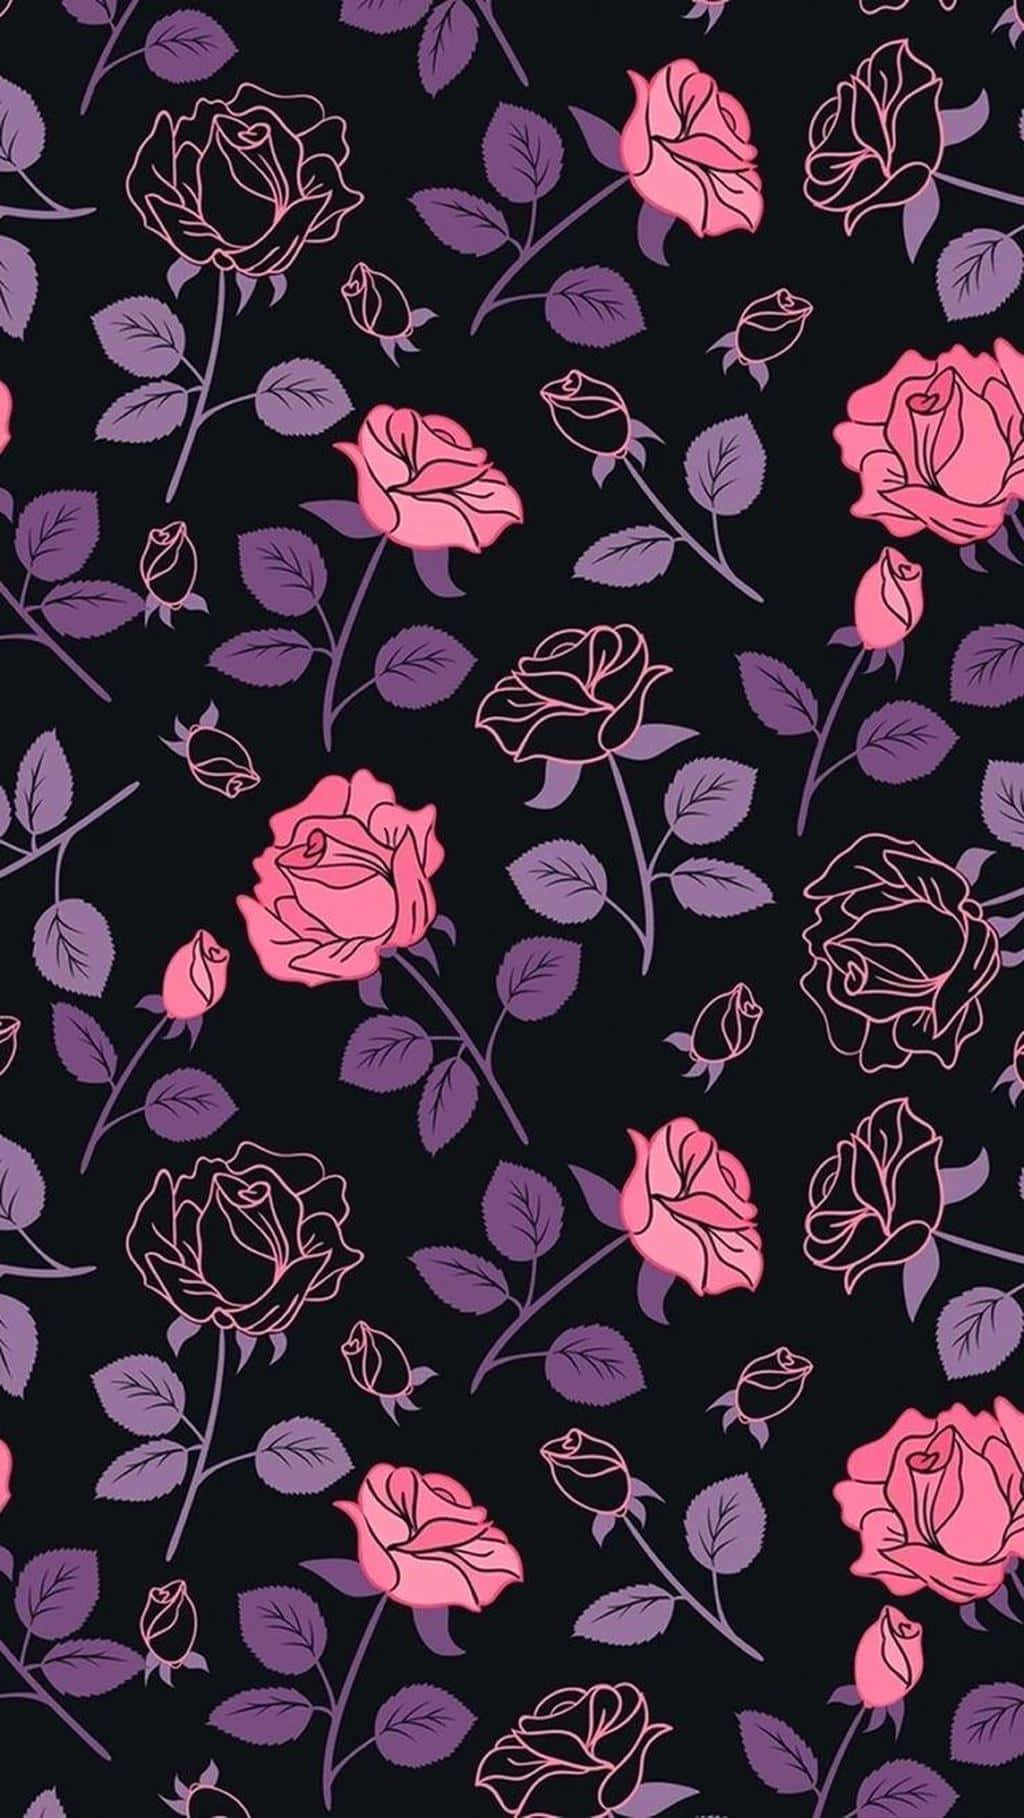 Kluster af pink blomster der udsender en charmerende, følsom stemning Wallpaper